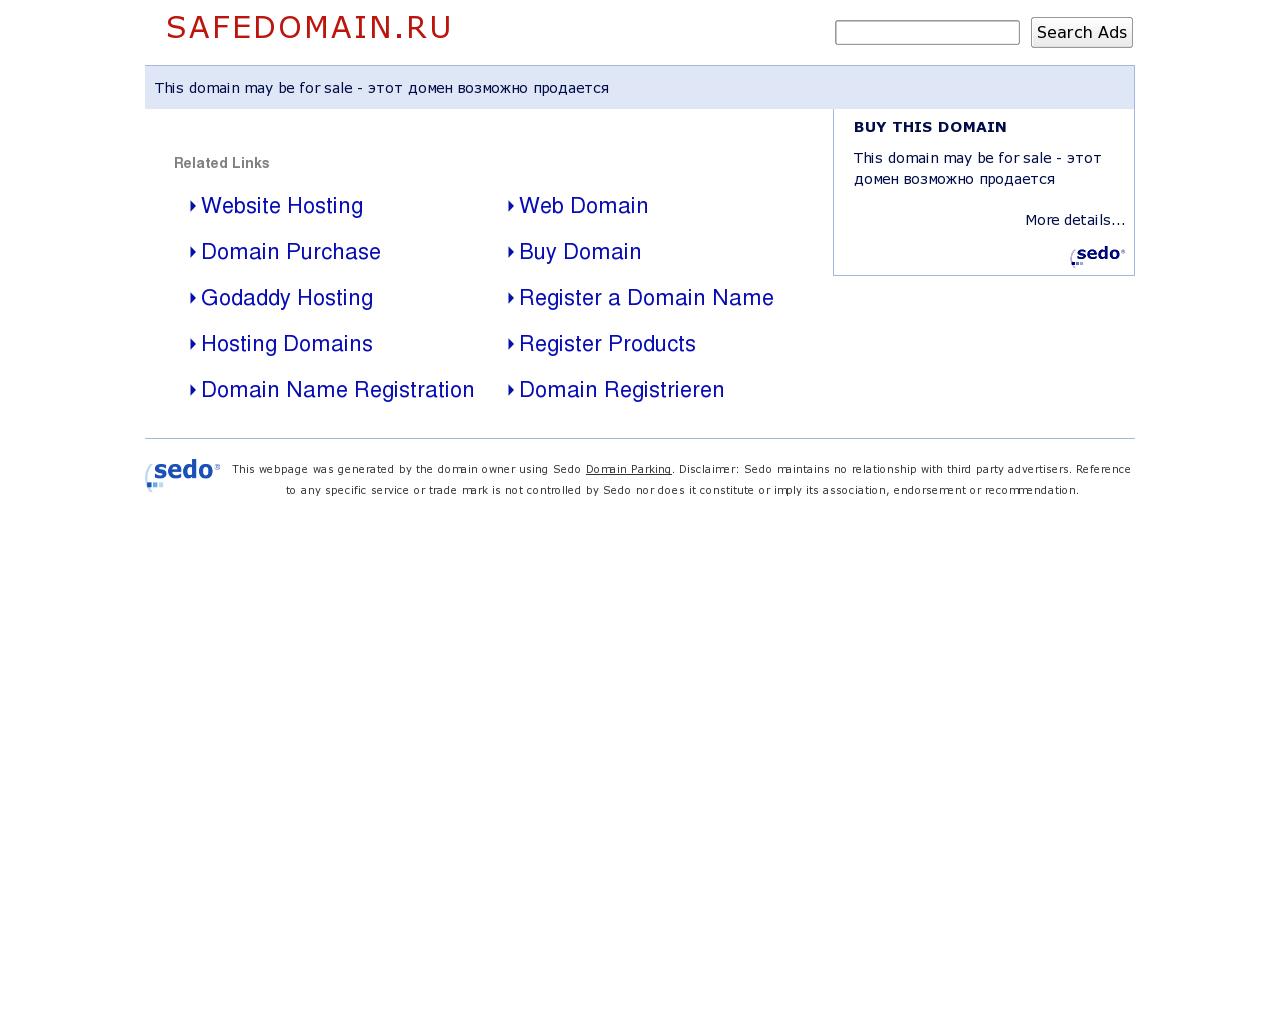 Изображение сайта safedomain.ru в разрешении 1280x1024